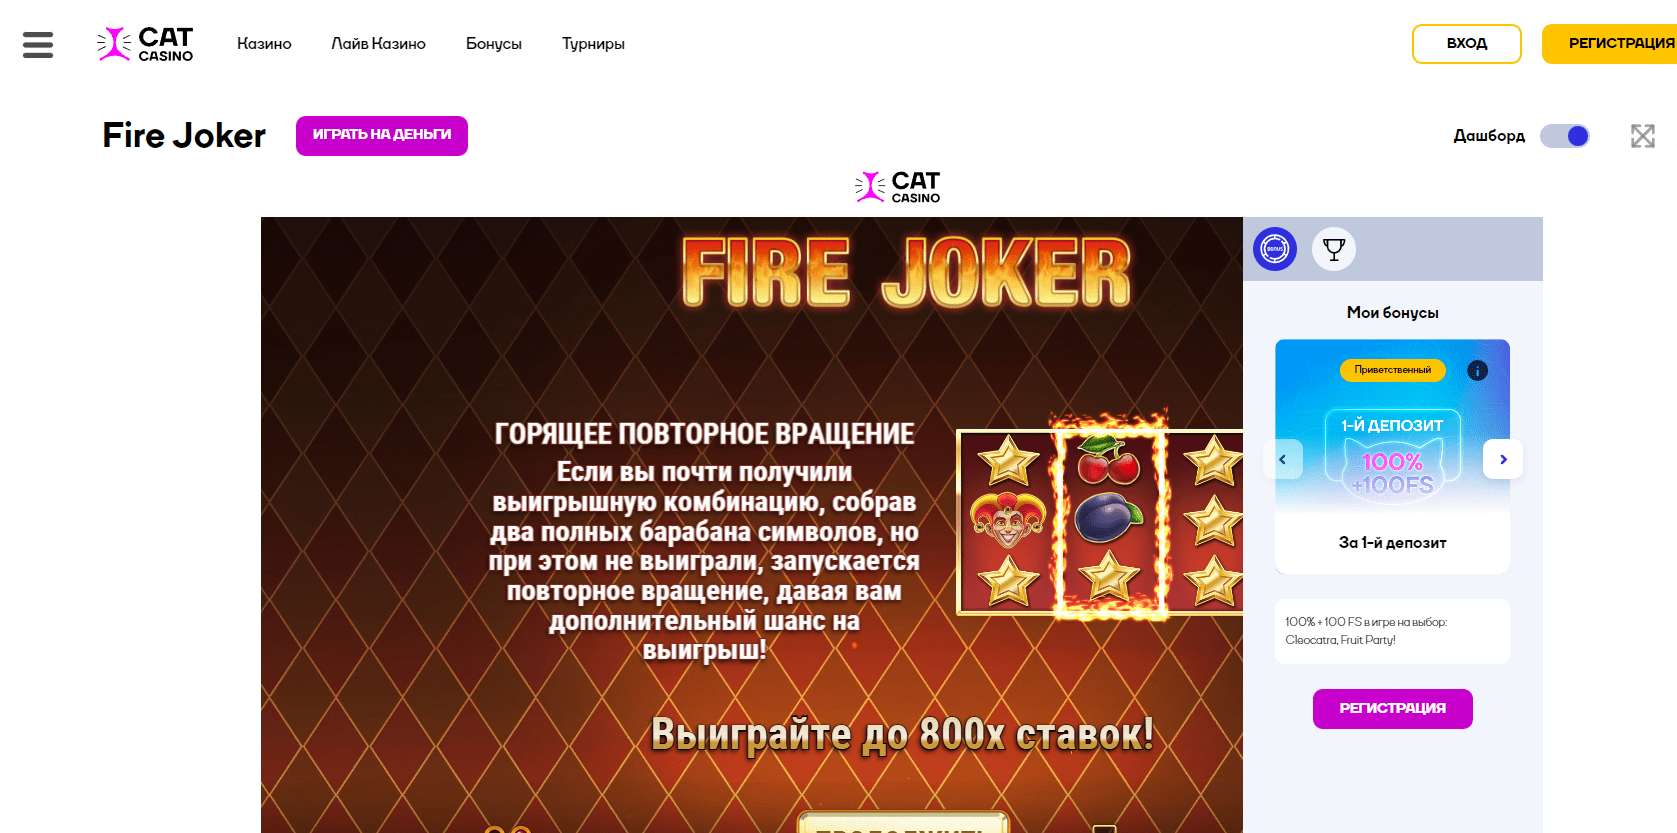 Fire joker online en Cat casino